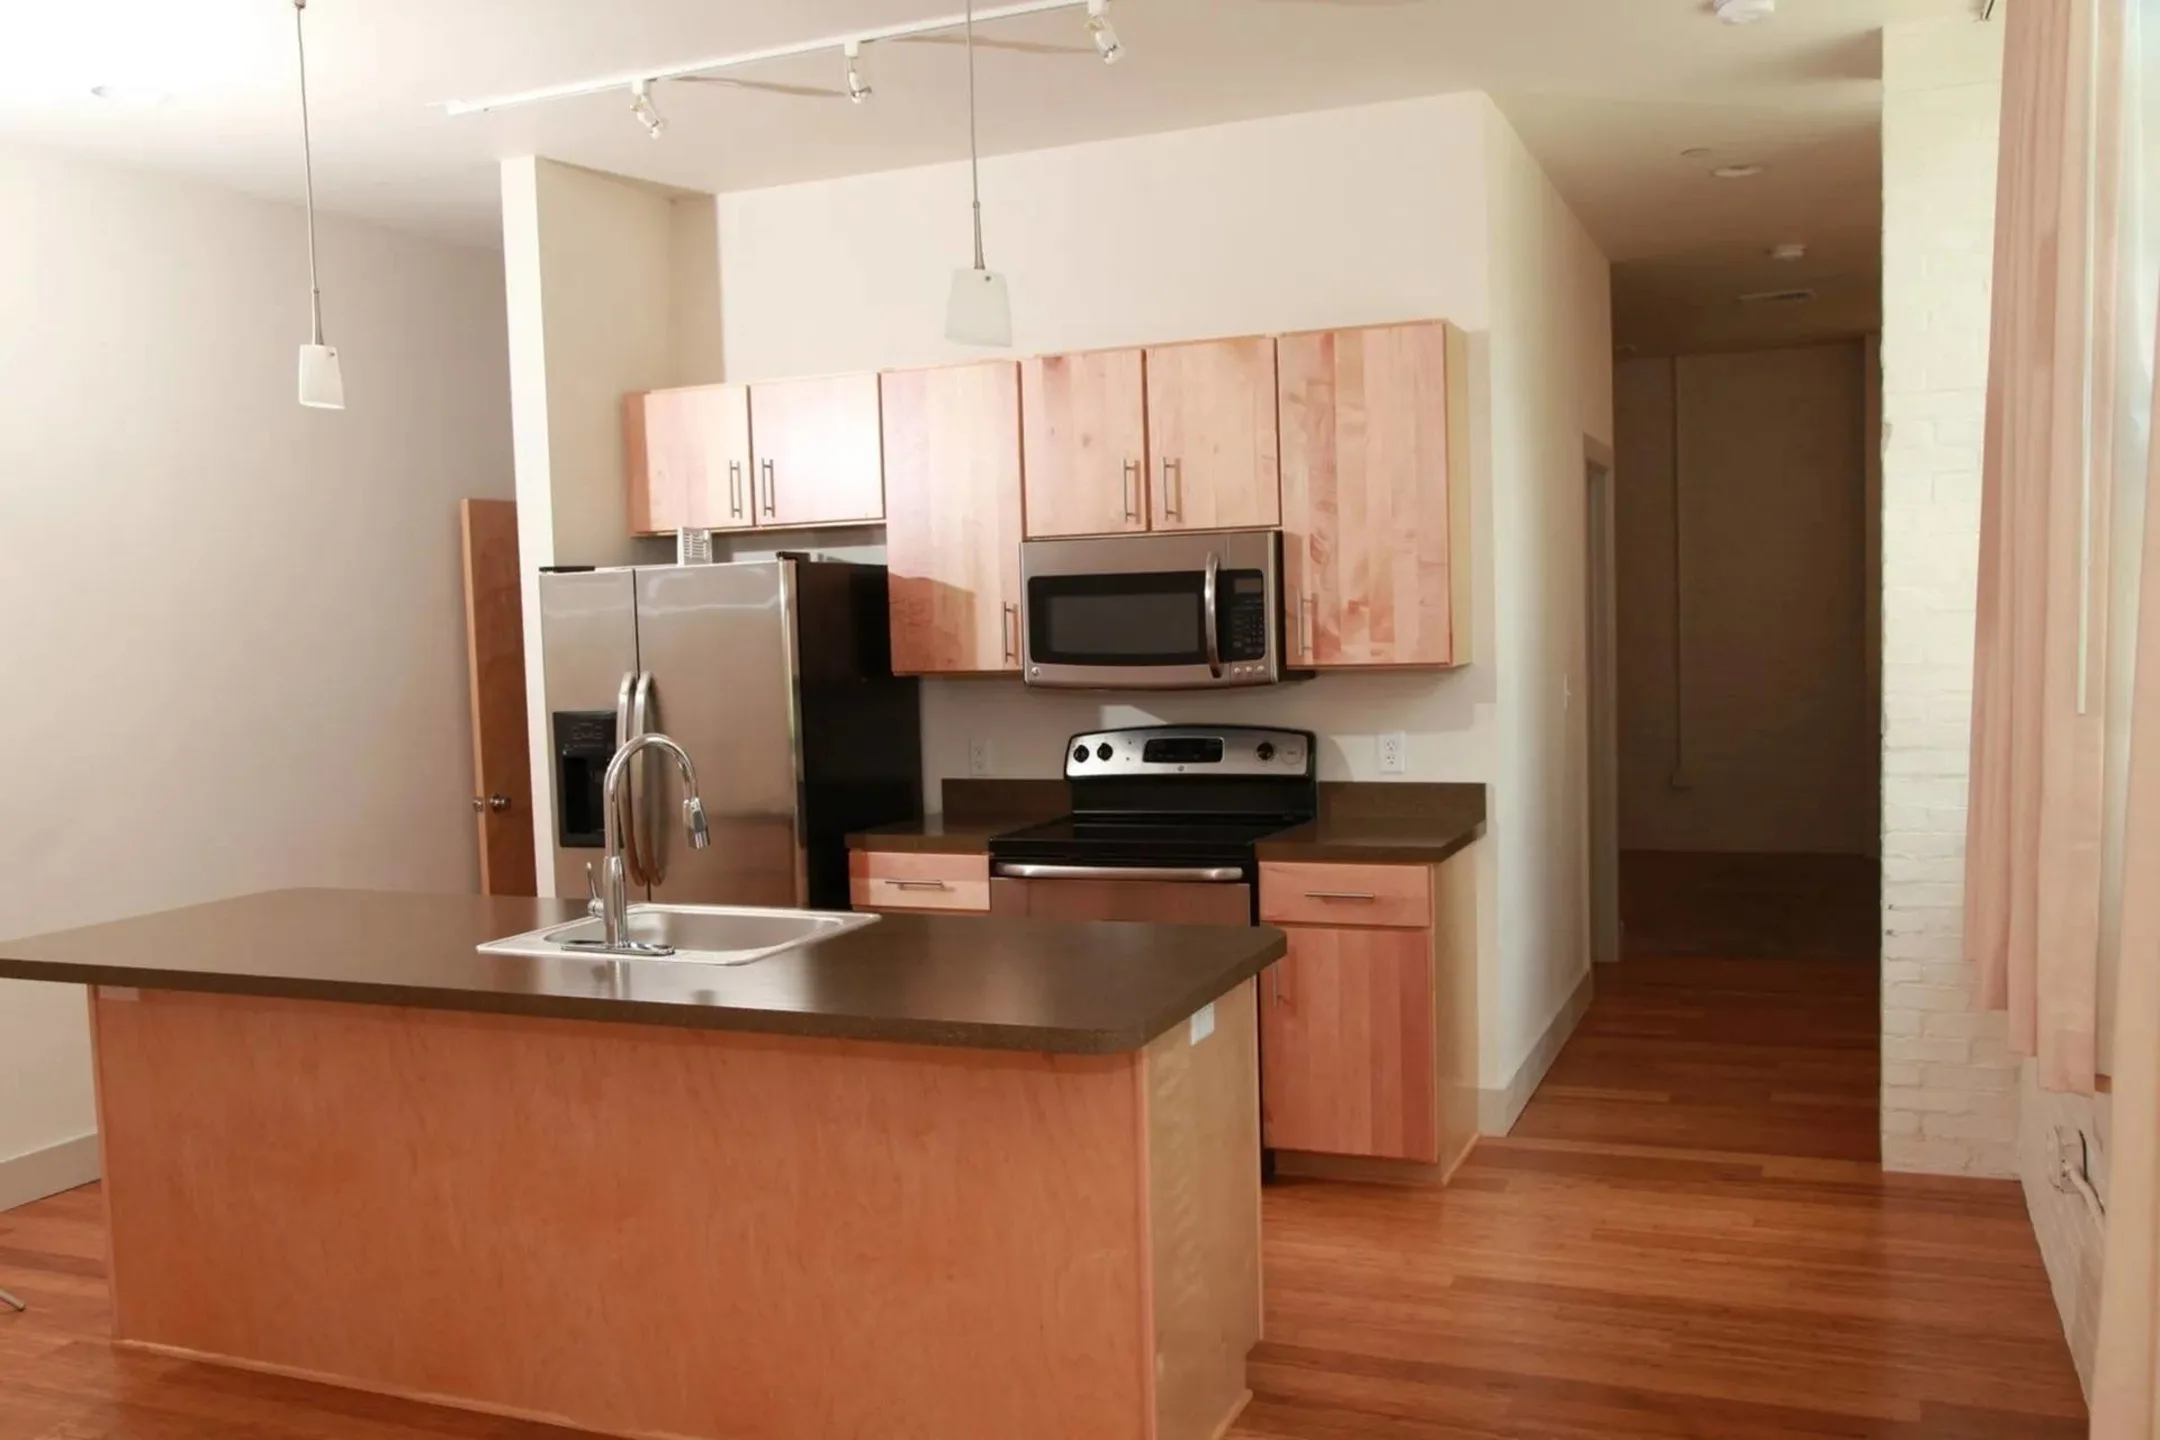 Kitchen - Ribbon Place Apartments - York, PA